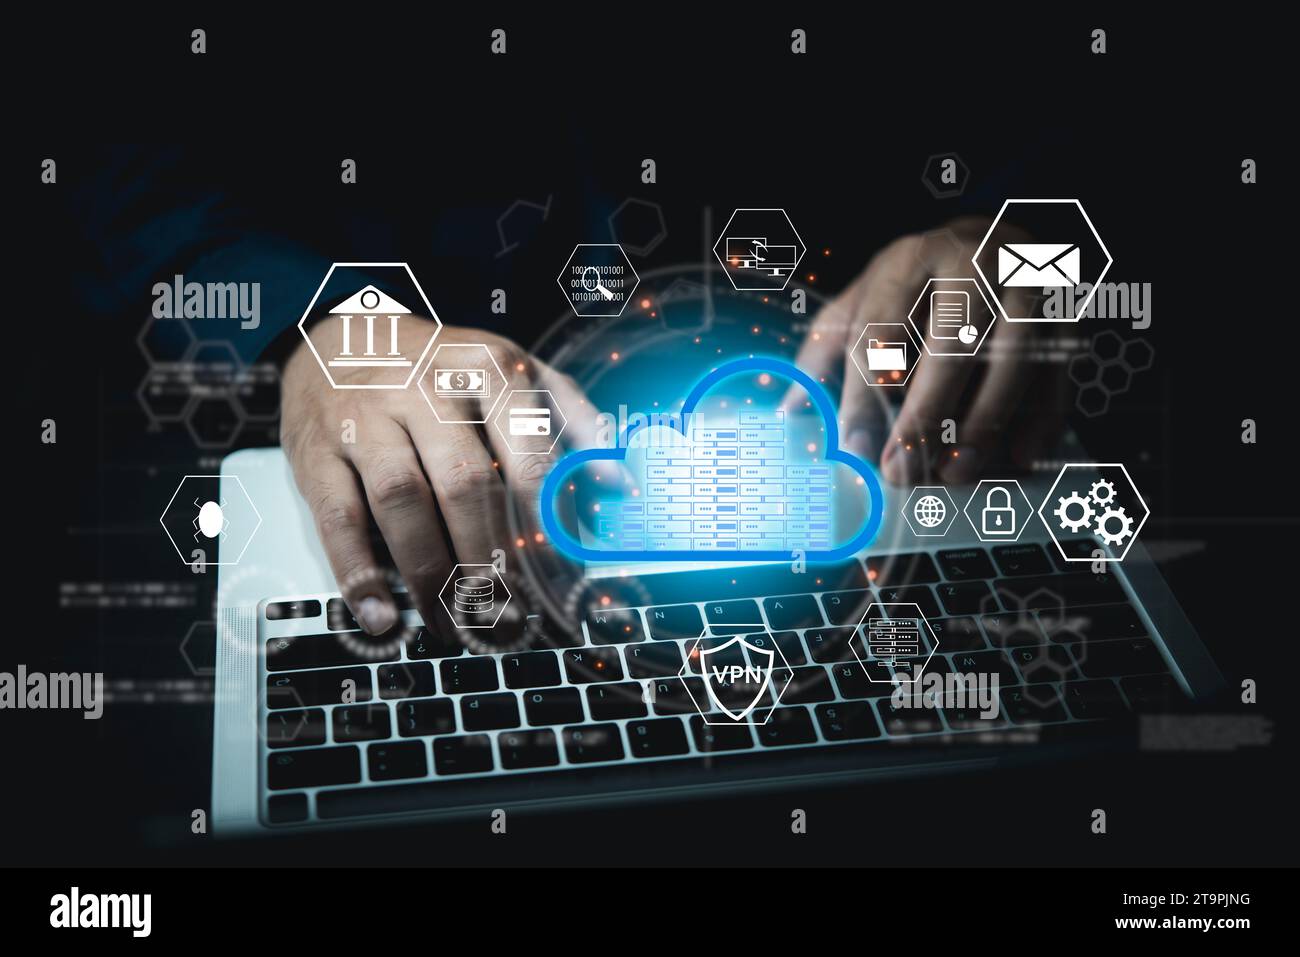 Informationen zur Cyber-Sicherheit in der Cloud, Internet-Online-Systemnetzwerk. Innovation Server Web Data Storage Multimedia sowie Finanz- und Bankwesen. Stockfoto